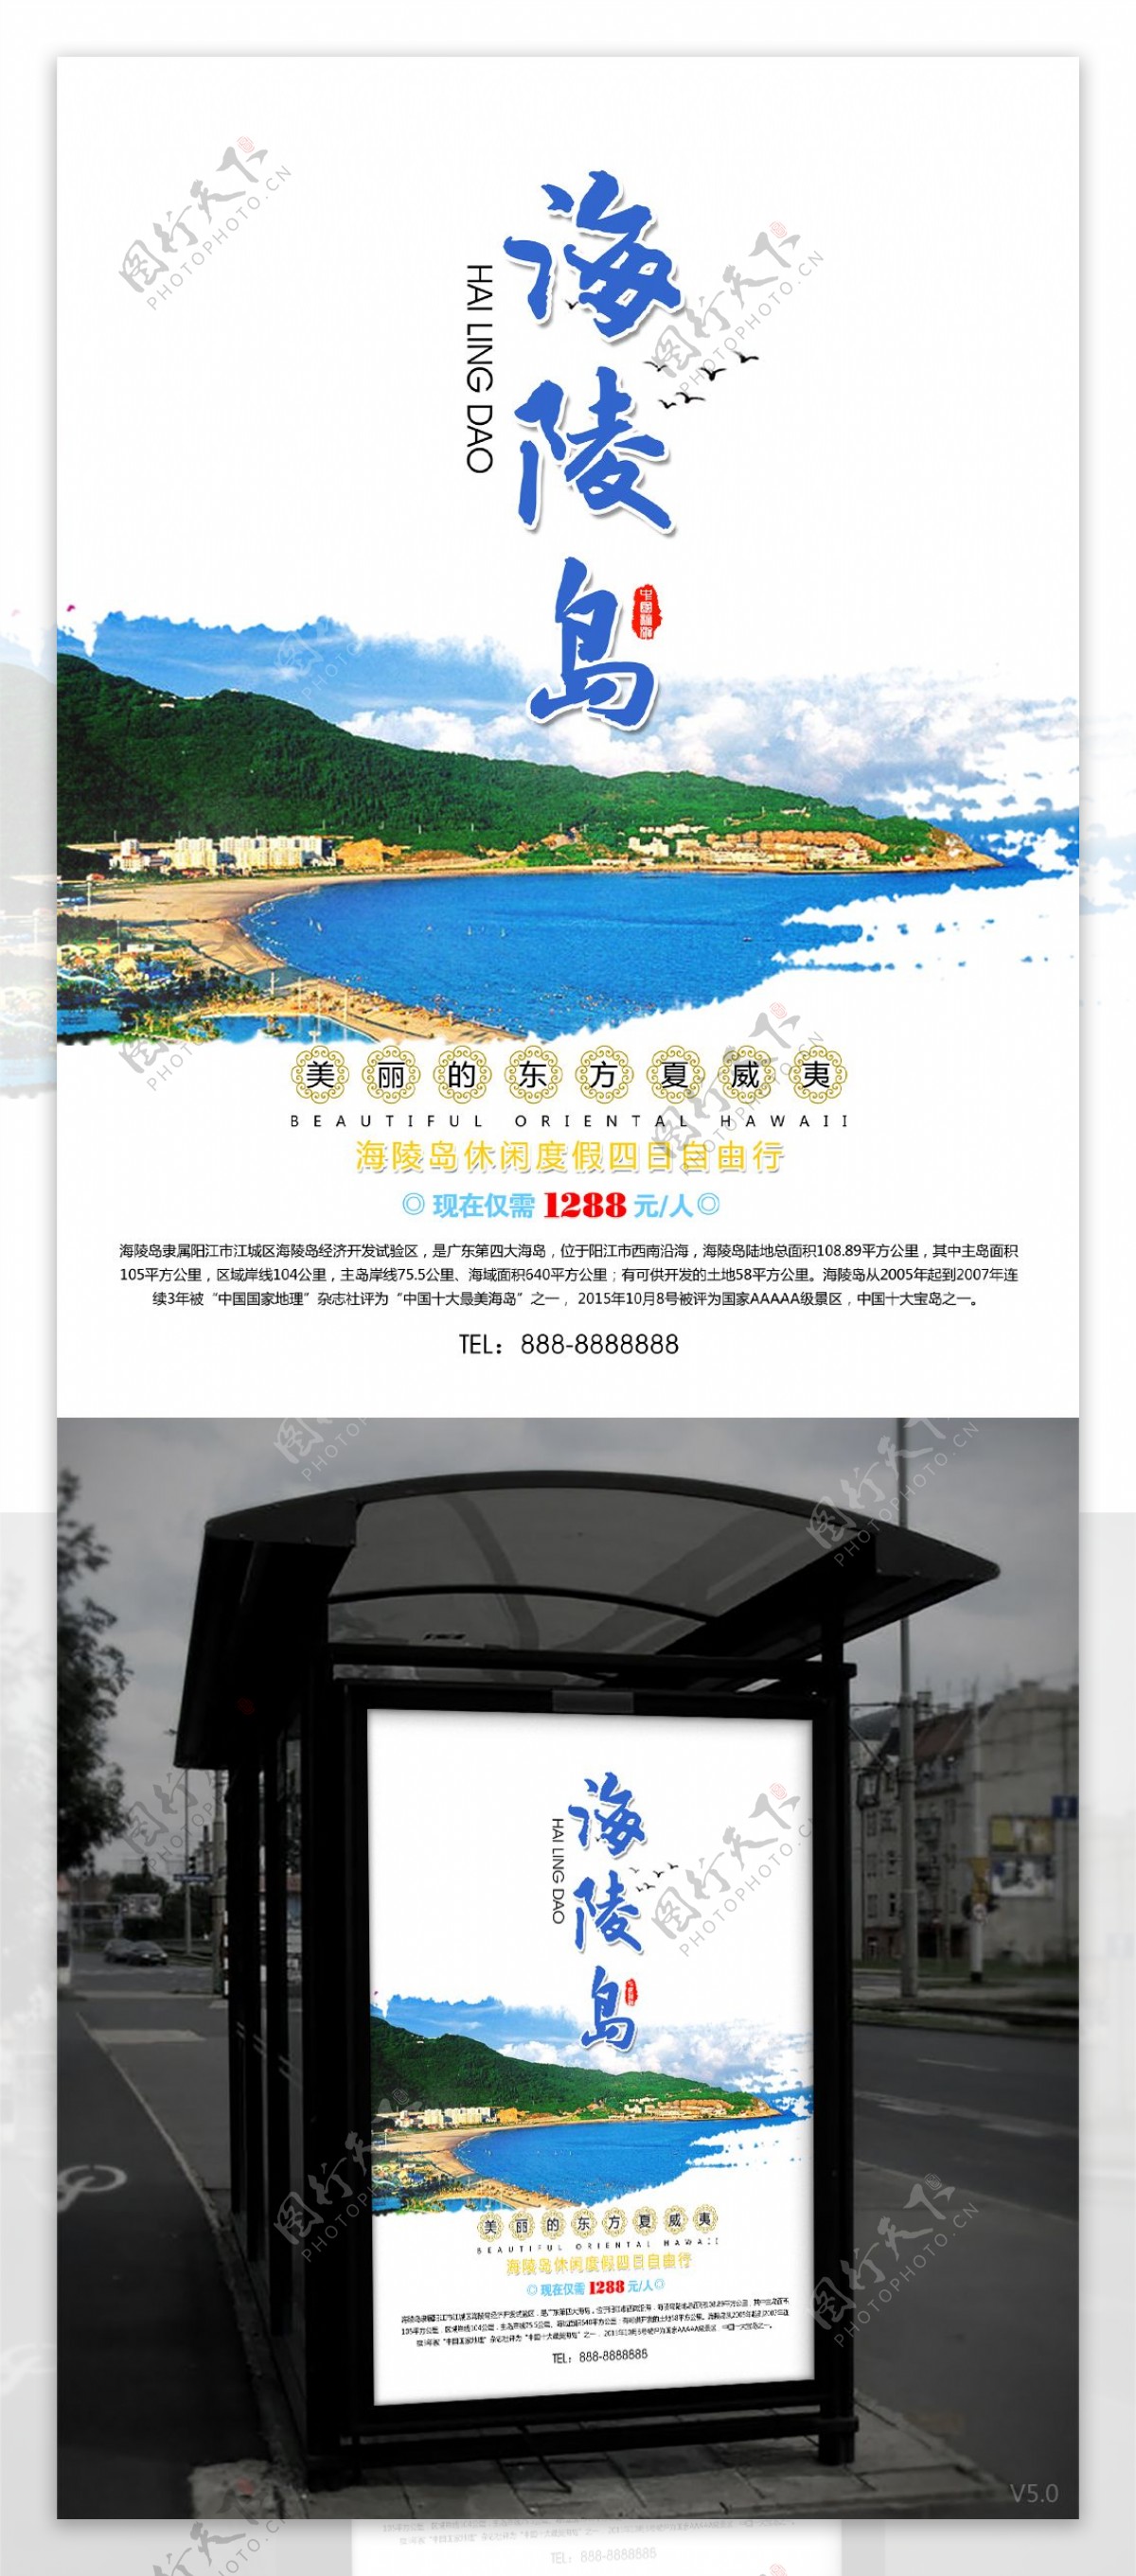 海岛鸟蓝色简洁海陵岛旅游宣传海报